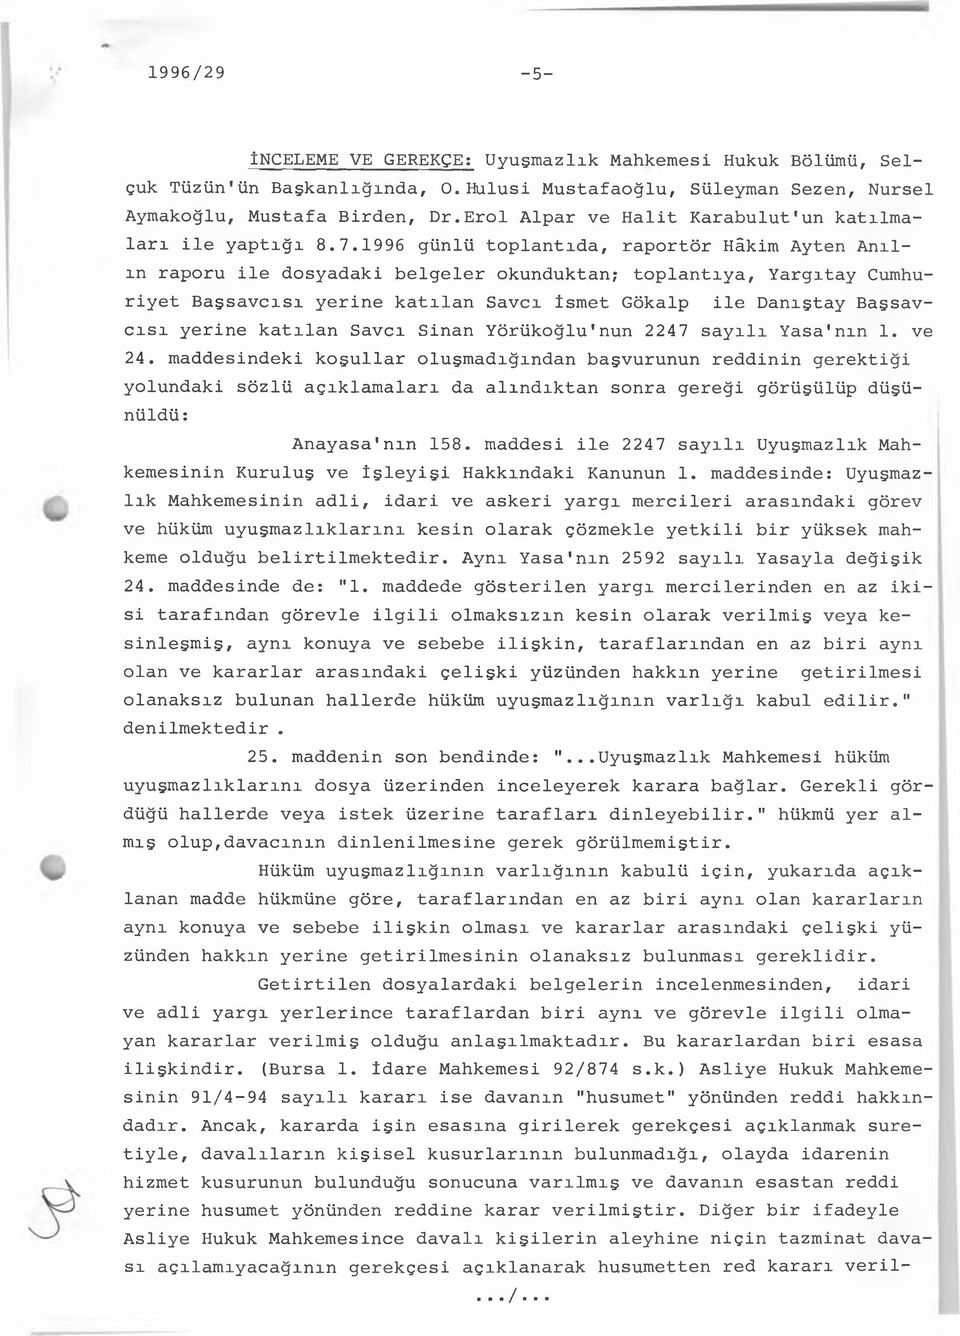 1996 günlü toplantıda, raportör Hâkim Ayten Anılın raporu ile dosyadaki belgeler okunduktan; toplantıya, Yargıtay Cumhuriyet Başsavcısı yerine katılan Savcı İsmet Gökalp ile Danıştay Başsavcısı